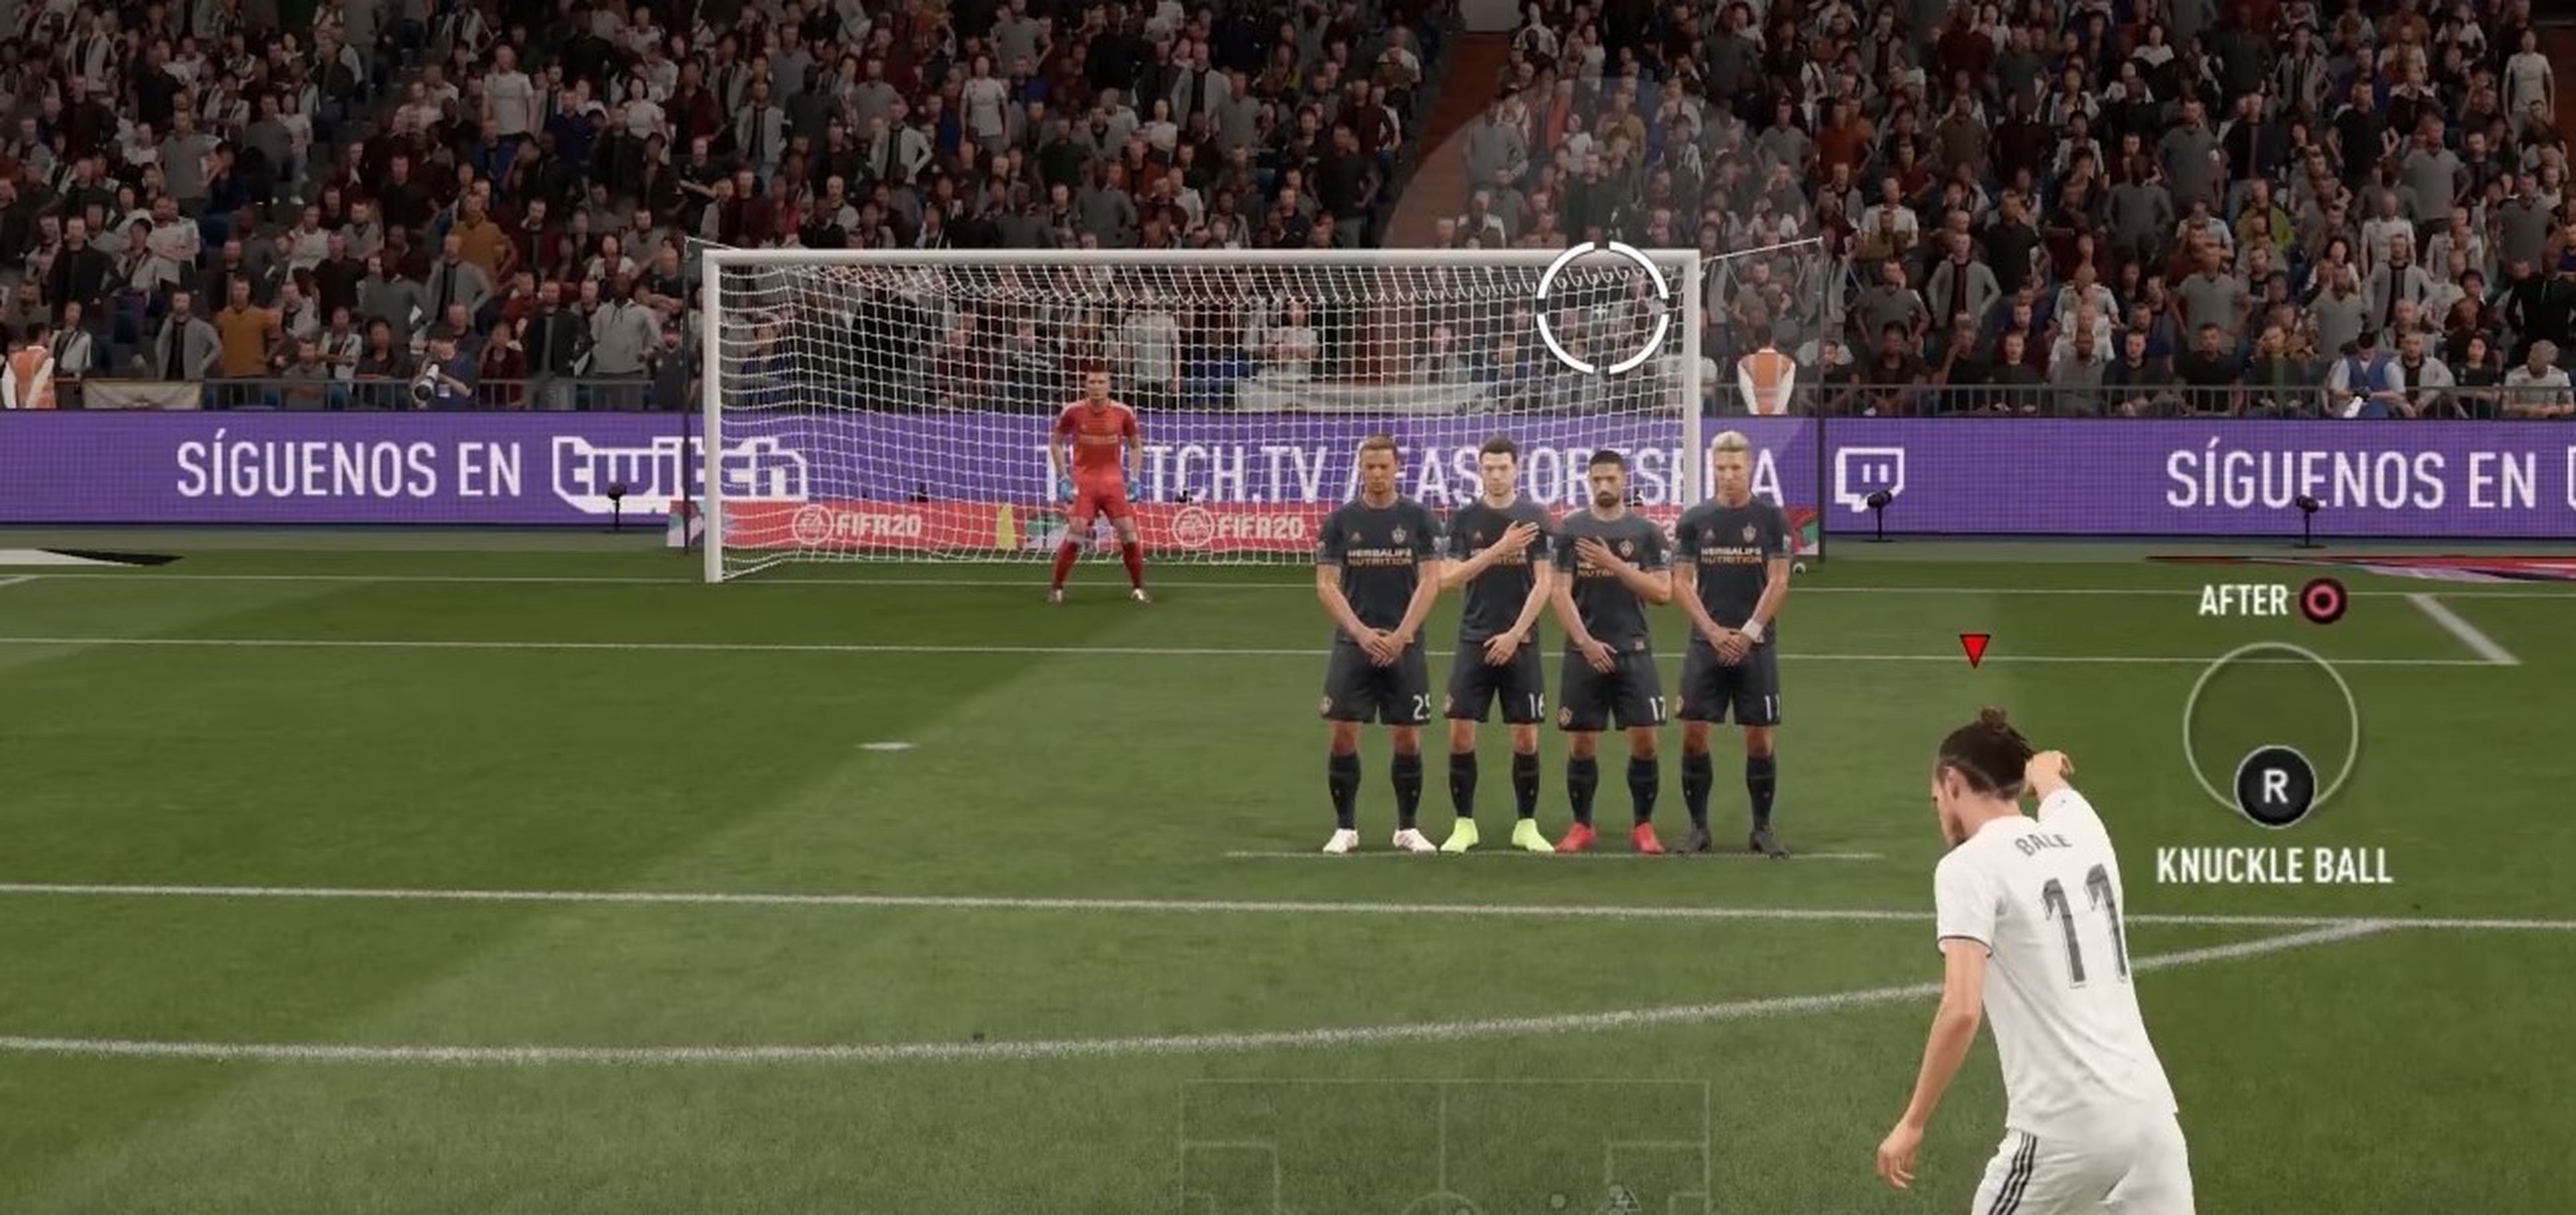 Cómo tirar faltas en FIFA 20 con efecto